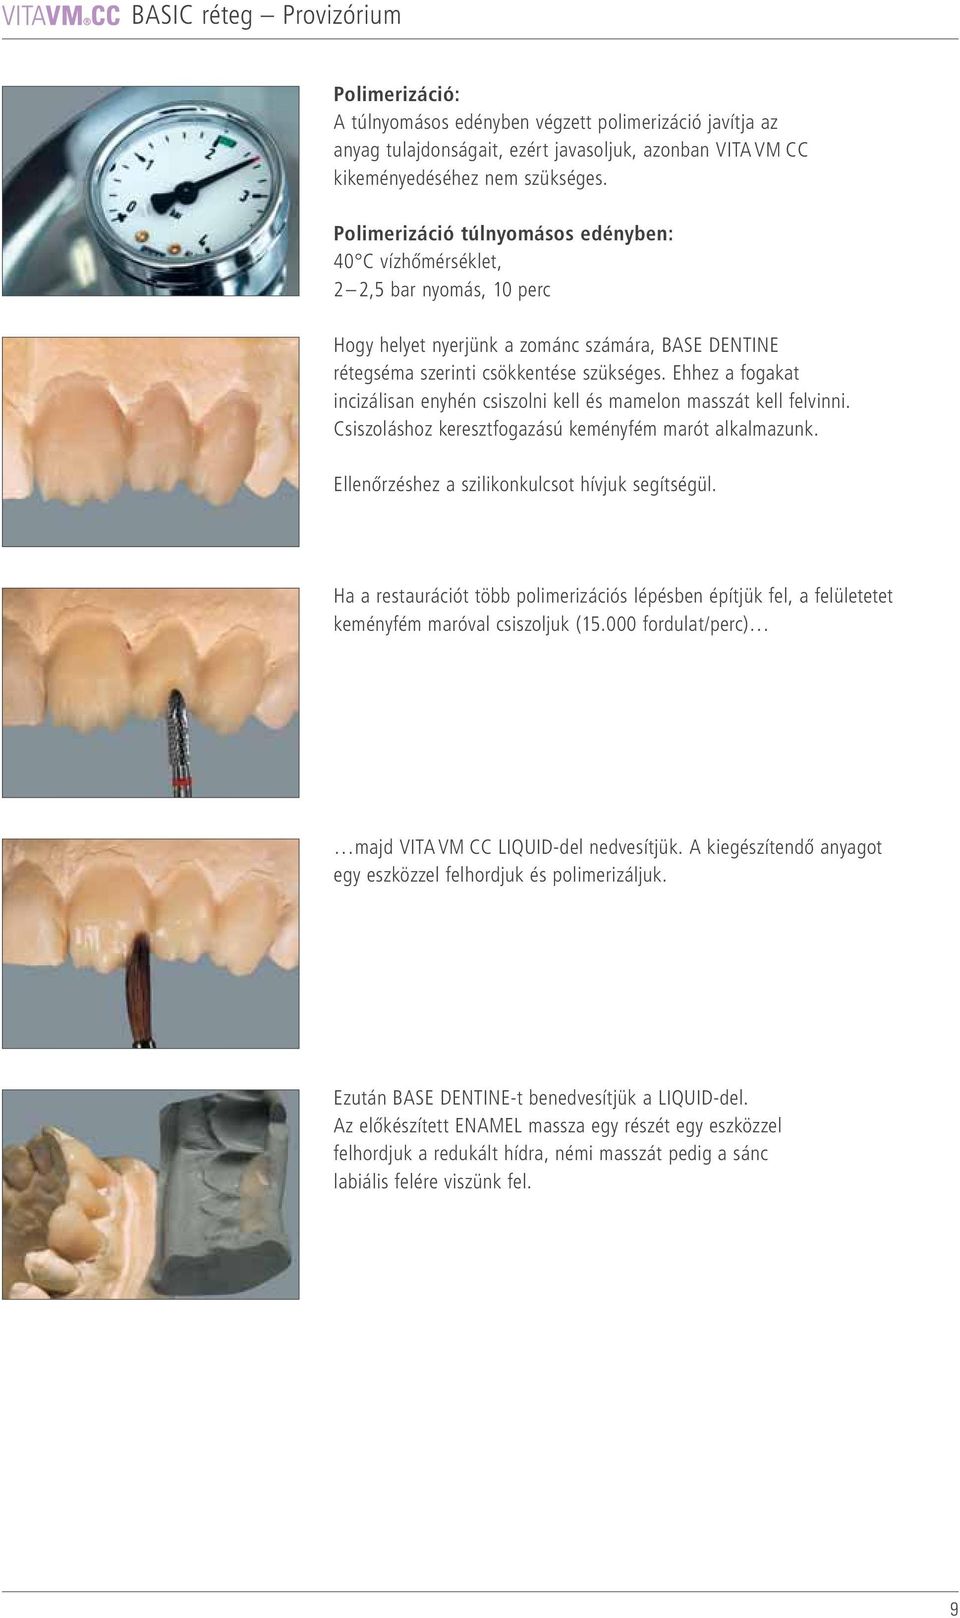 Ehhez a fogakat incizálisan enyhén csiszolni kell és mamelon masszát kell felvinni. Csiszoláshoz keresztfogazású keményfém marót alkalmazunk. Ellenőrzéshez a szilikonkulcsot hívjuk segítségül.